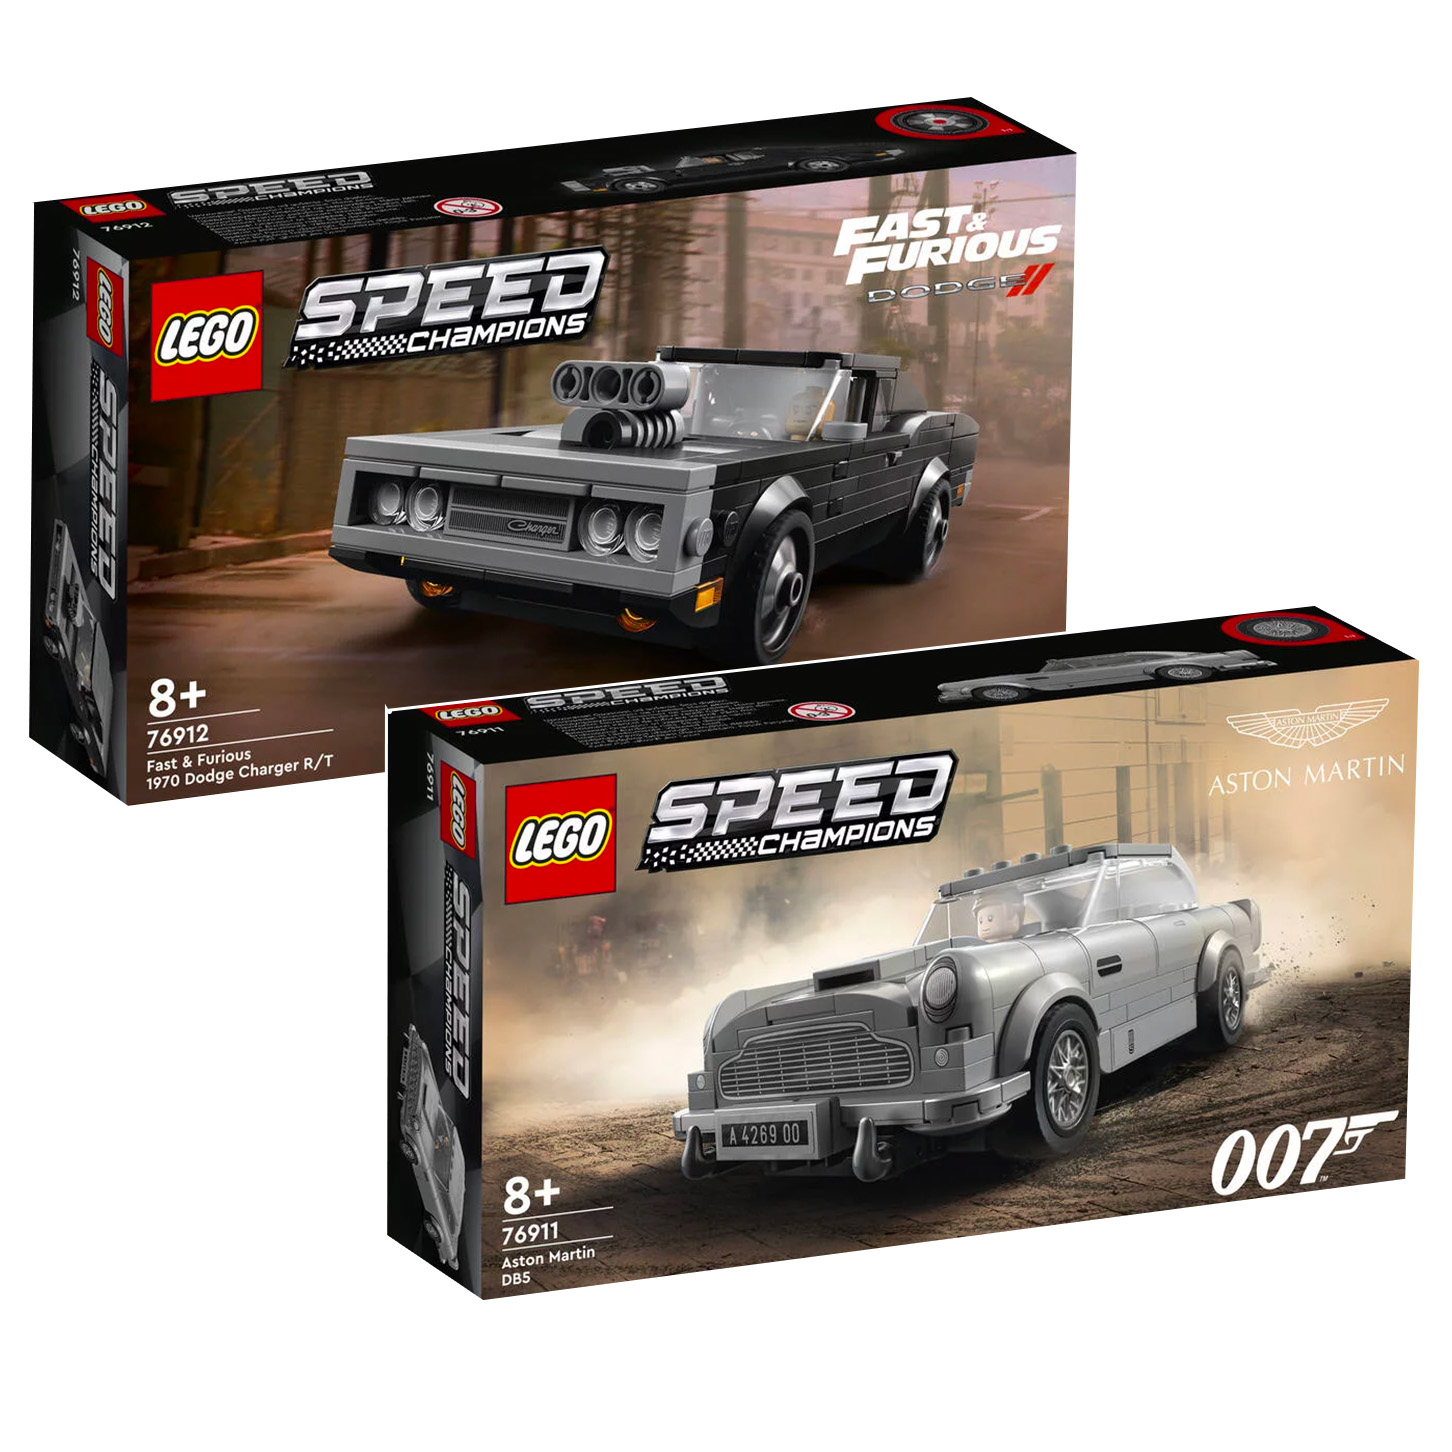 Nouveautés LEGO Speed Champions 76911 Aston Martin DB5 et 76912 Fast & Furious 1970 Dodge Charger R/T : les sets sont en ligne sur le Shop